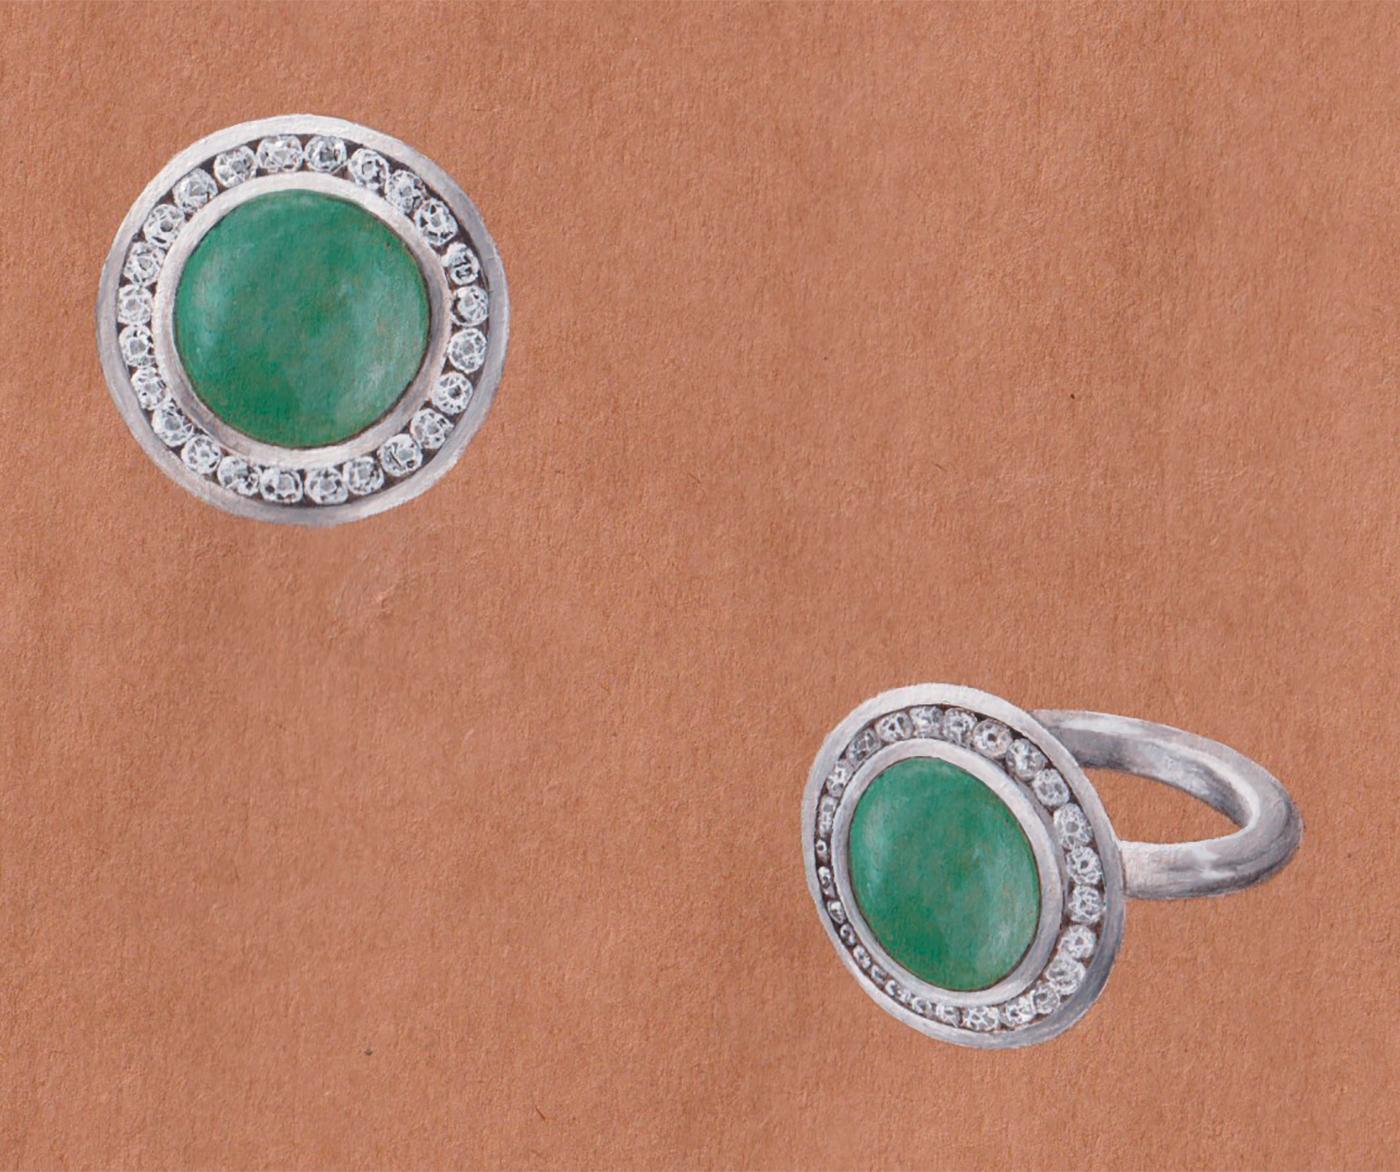 Platinum and diamond ring with unicorn engraved into jadeite